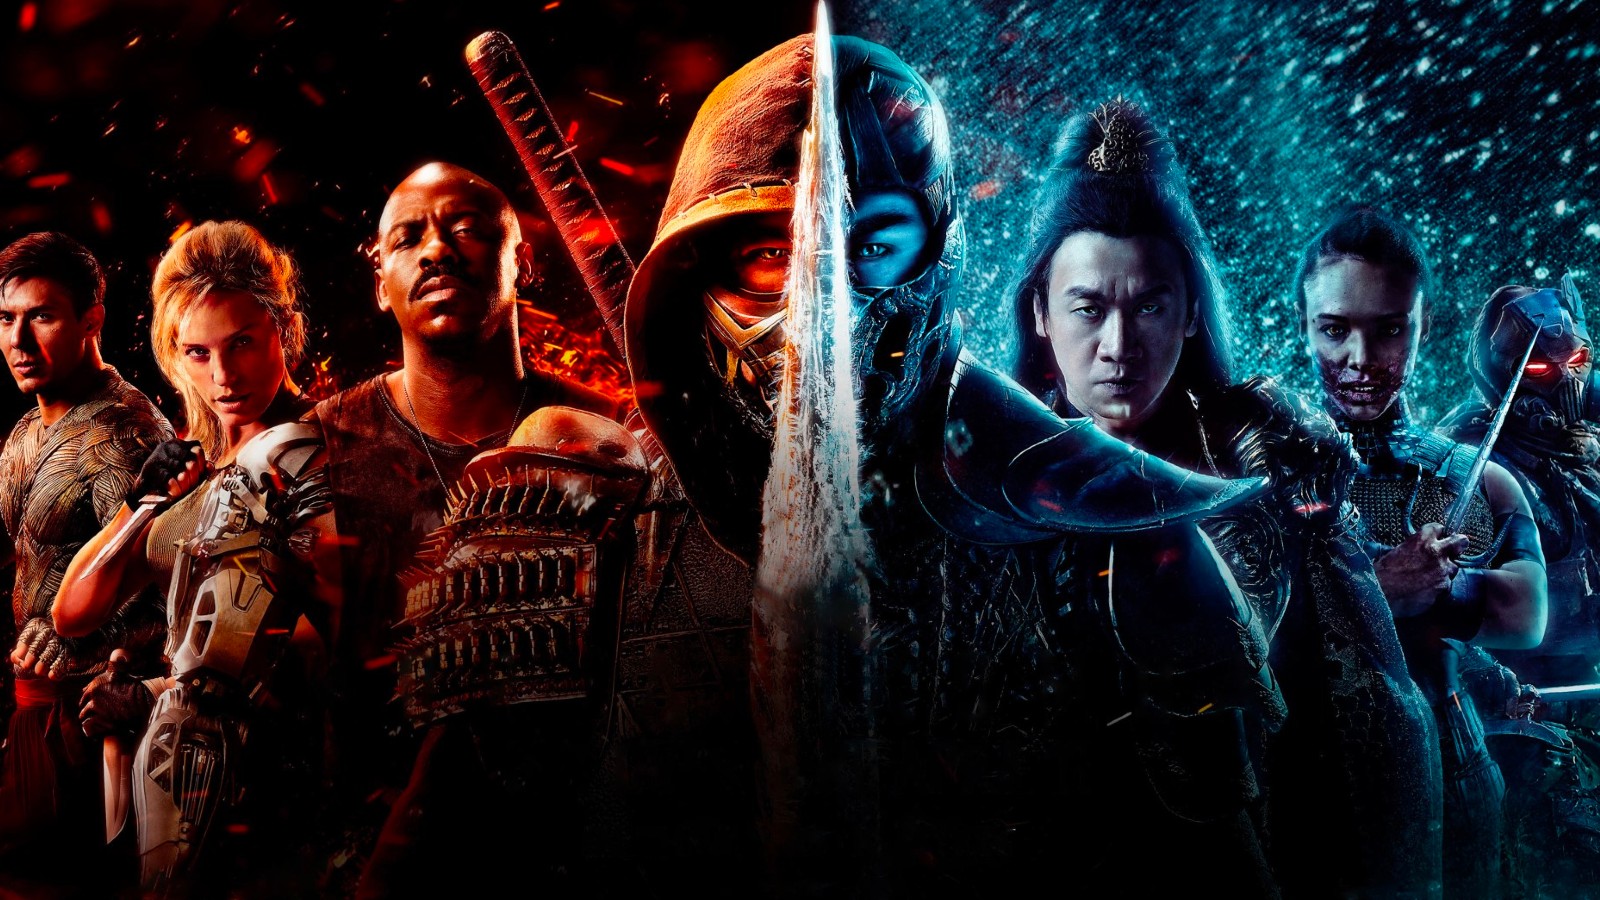 Mortal Kombat 2 producent kondigt de start van het filmen aan